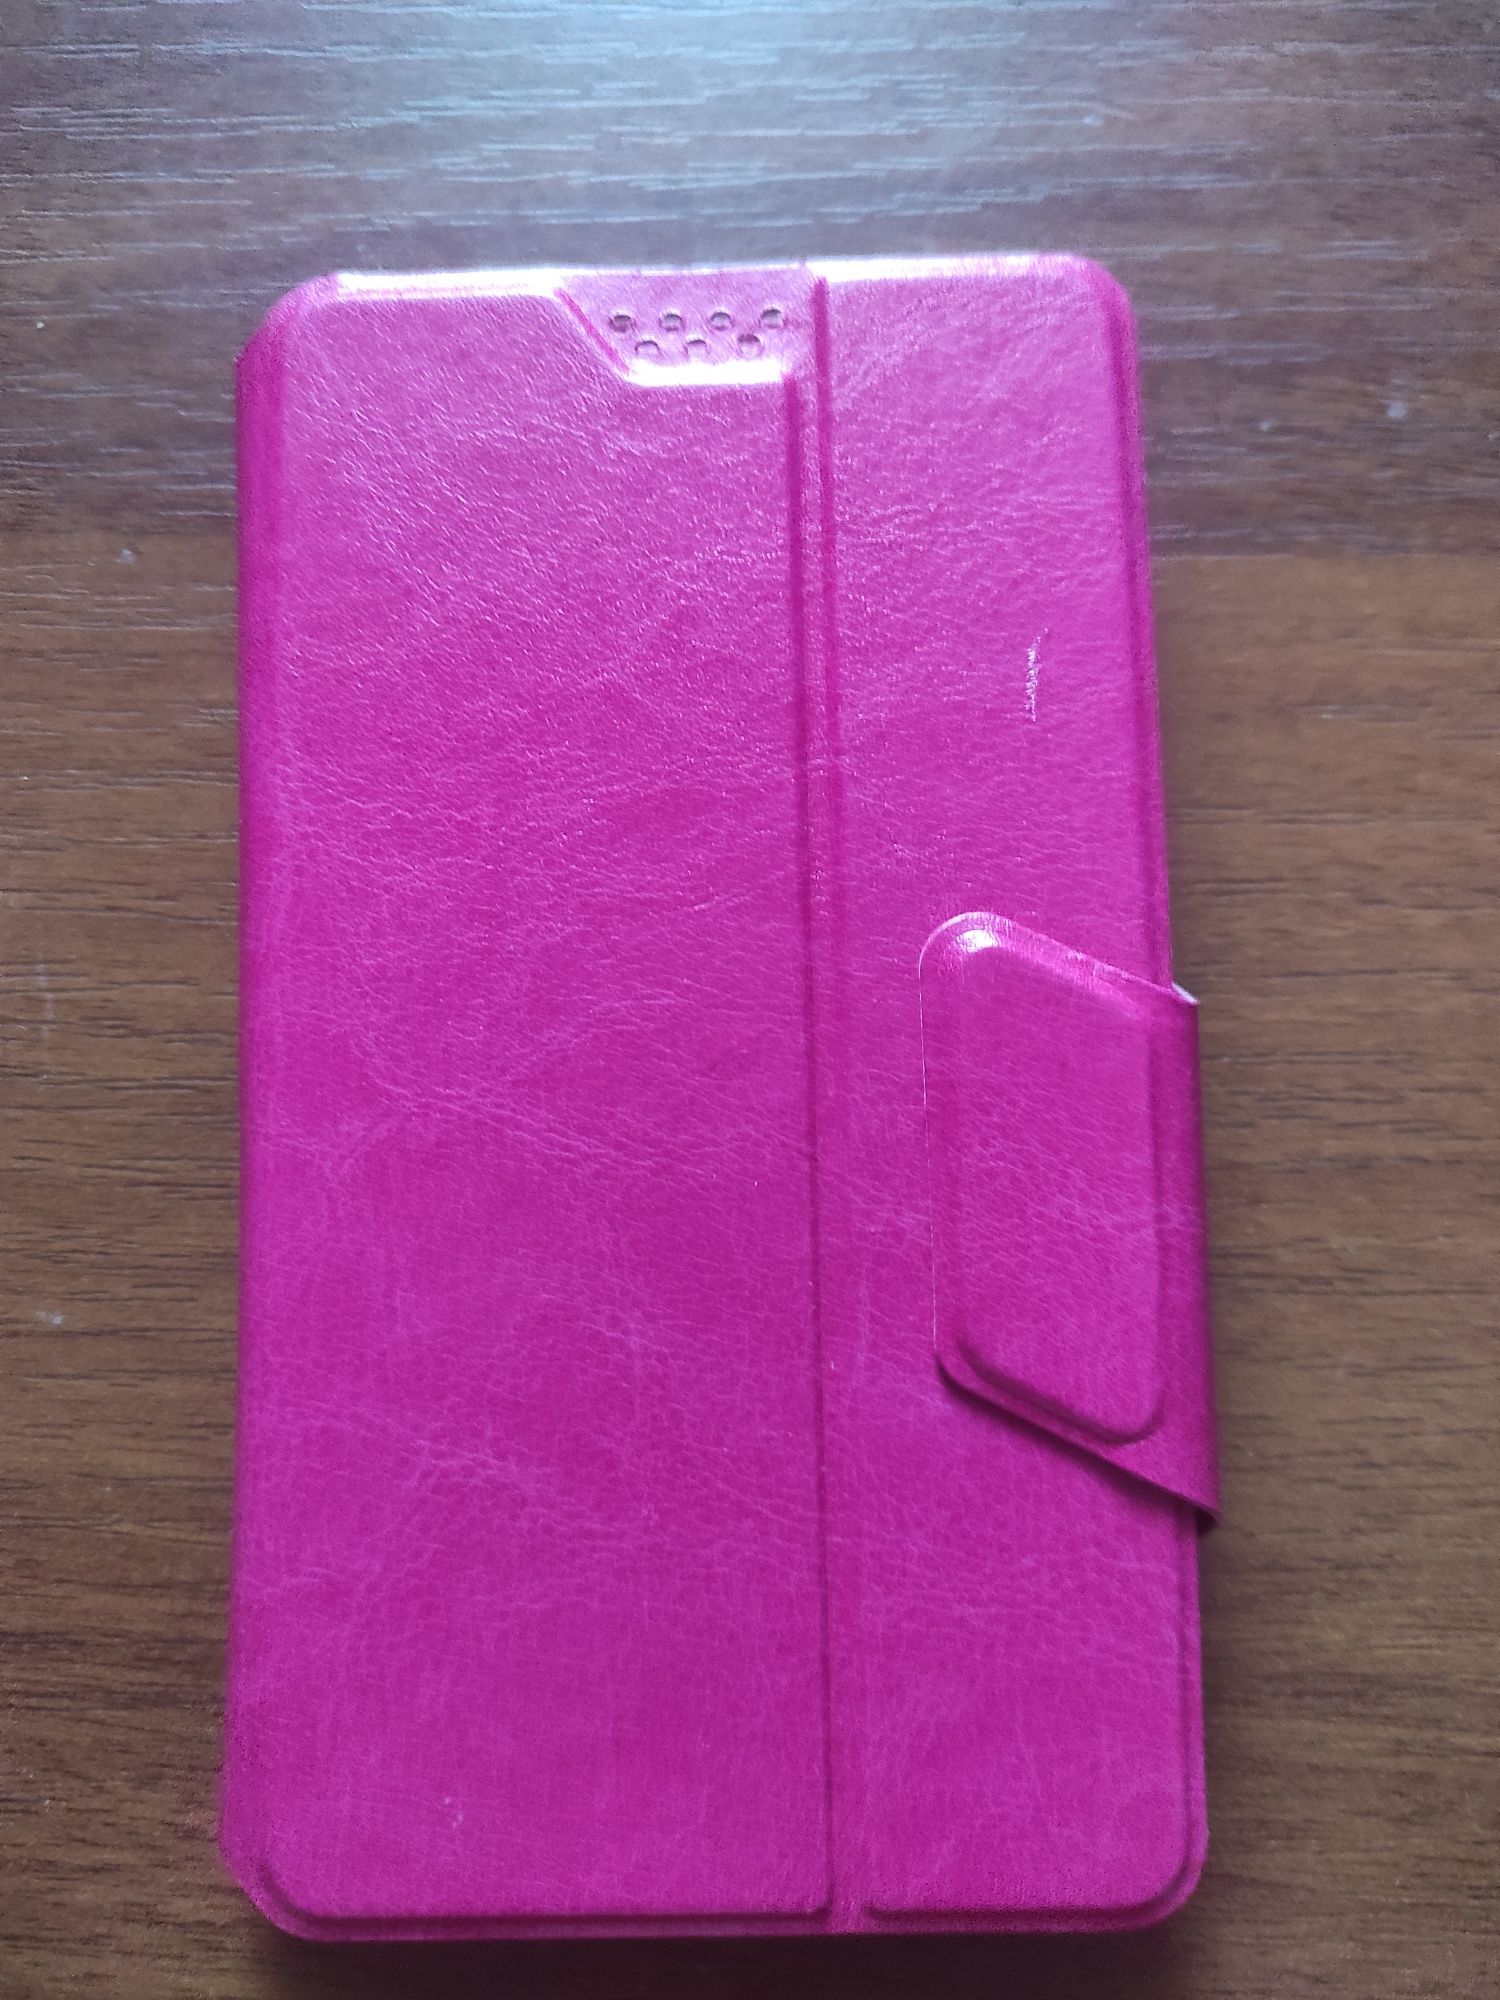 Продам чехол для телефона Redmi Note 4 новый